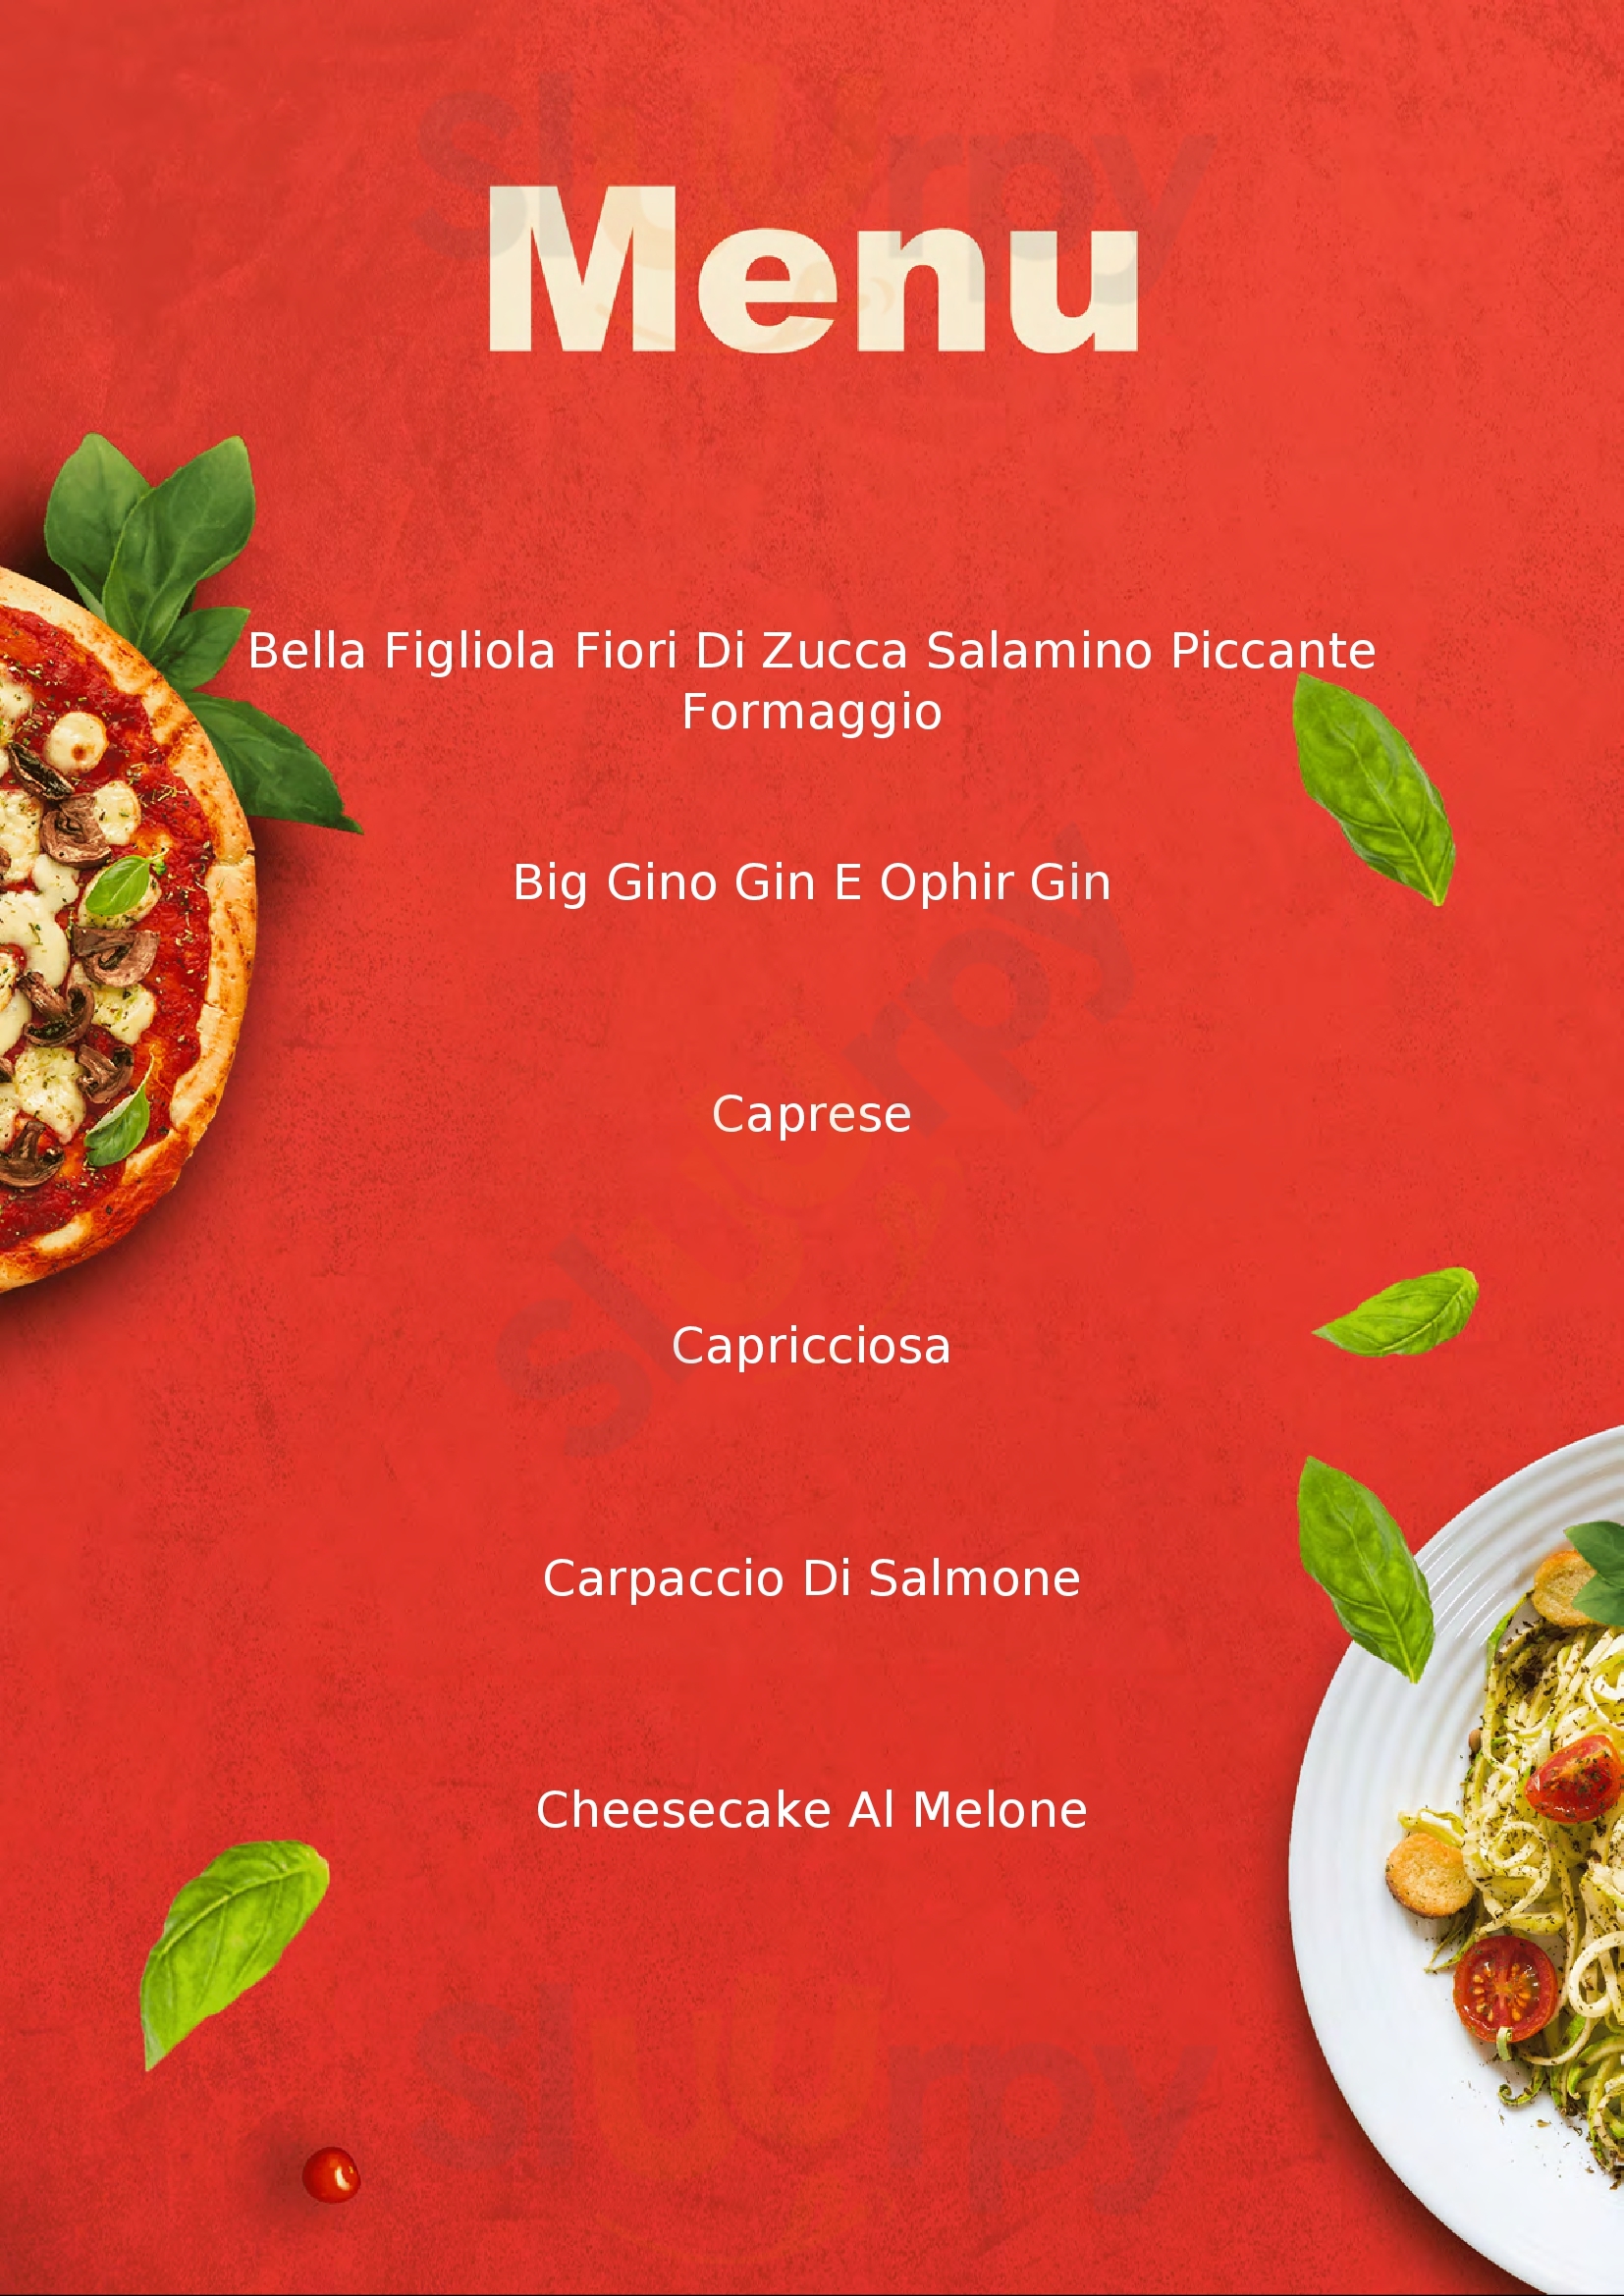 Pizzeria Malindi Castagneto Carducci menù 1 pagina